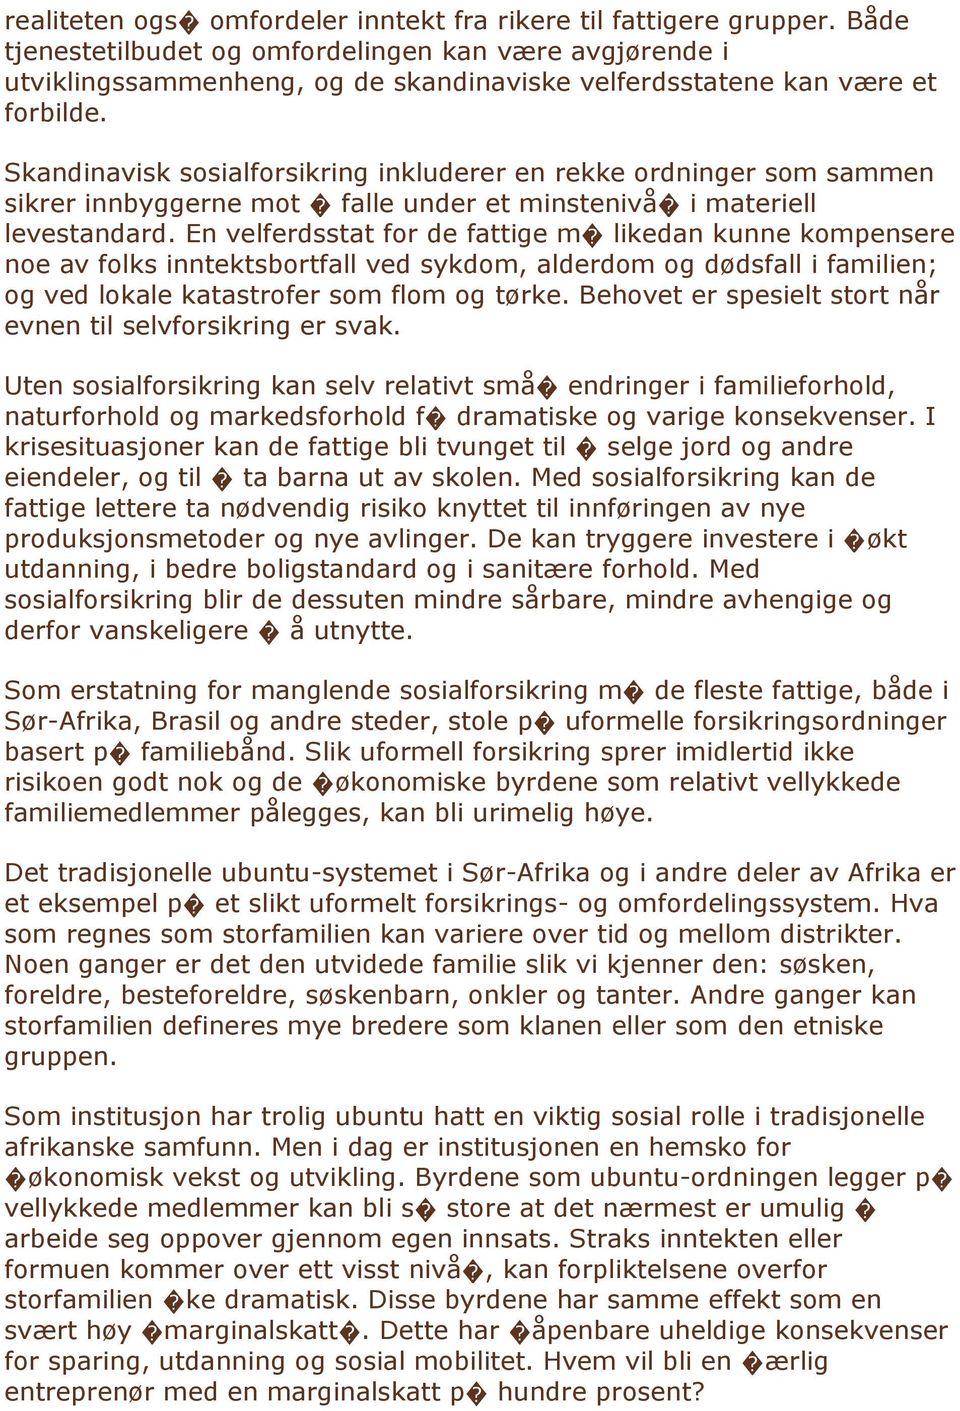 Skandinavisk sosialforsikring inkluderer en rekke ordninger som sammen sikrer innbyggerne mot falle under et minstenivå i materiell levestandard.